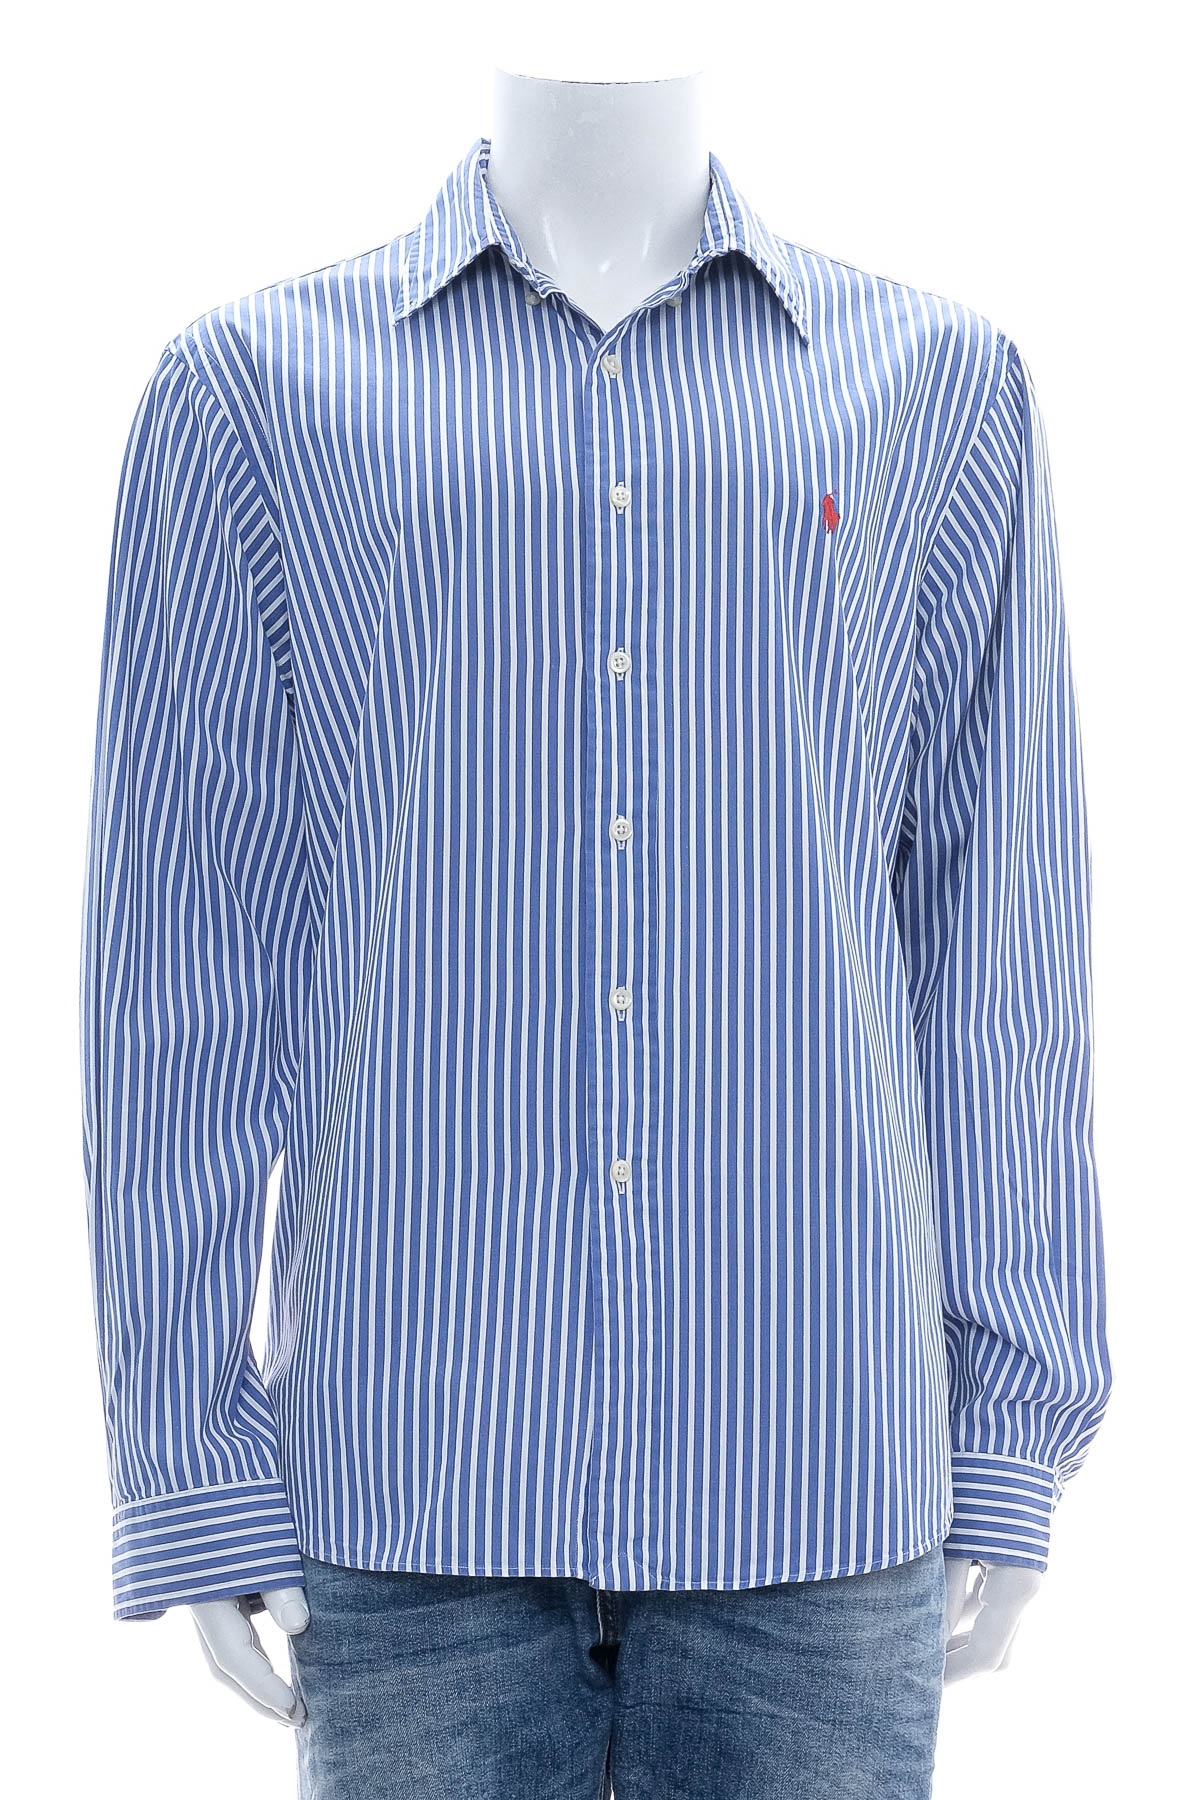 Men's shirt - Polo by Ralph Lauren - 0